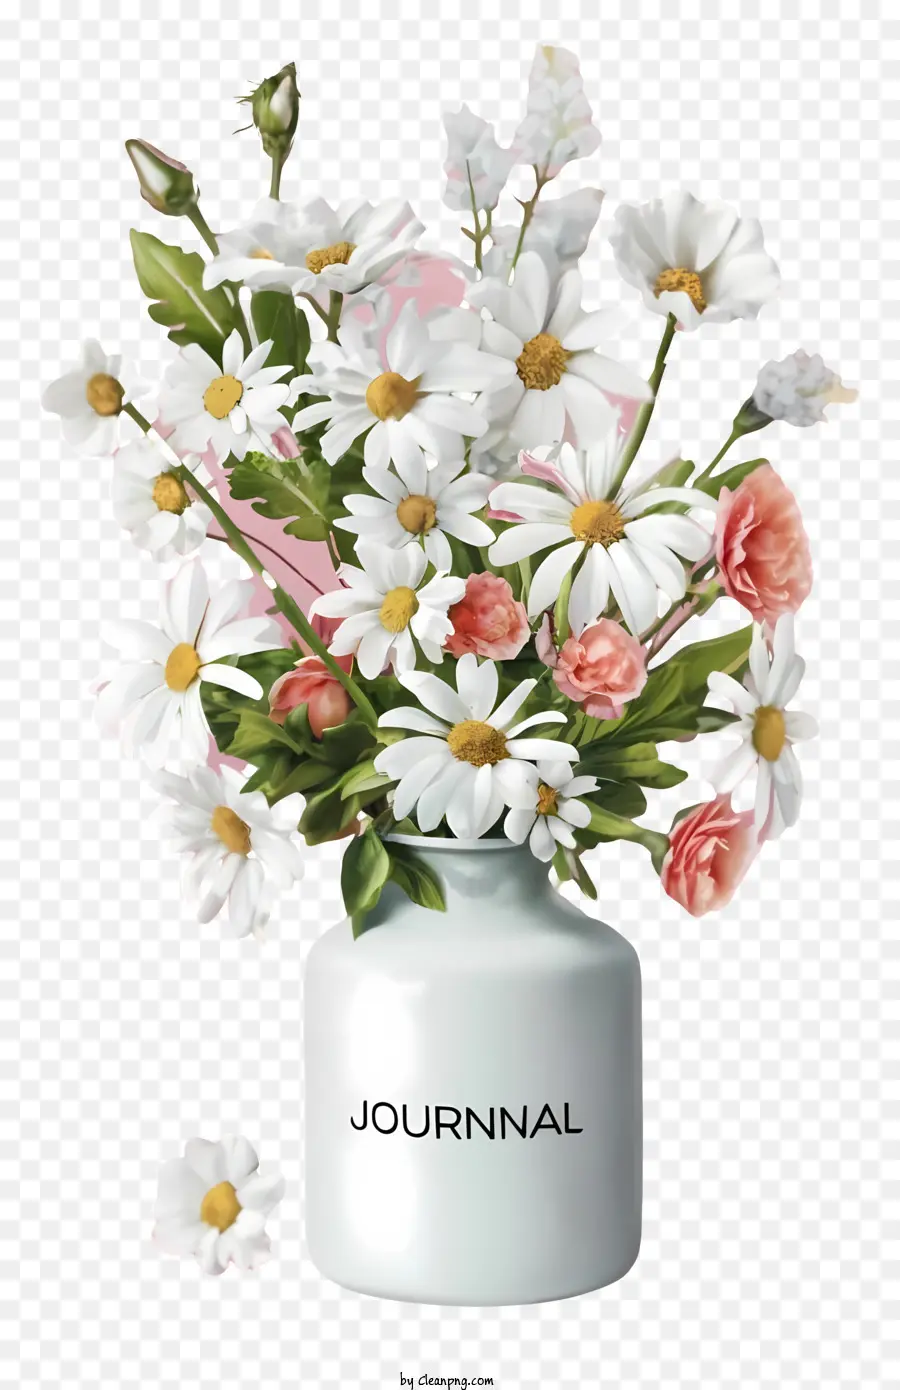 Blumenvase - Weiße Vase mit gemischtem Strauß auf der schwarzen Oberfläche